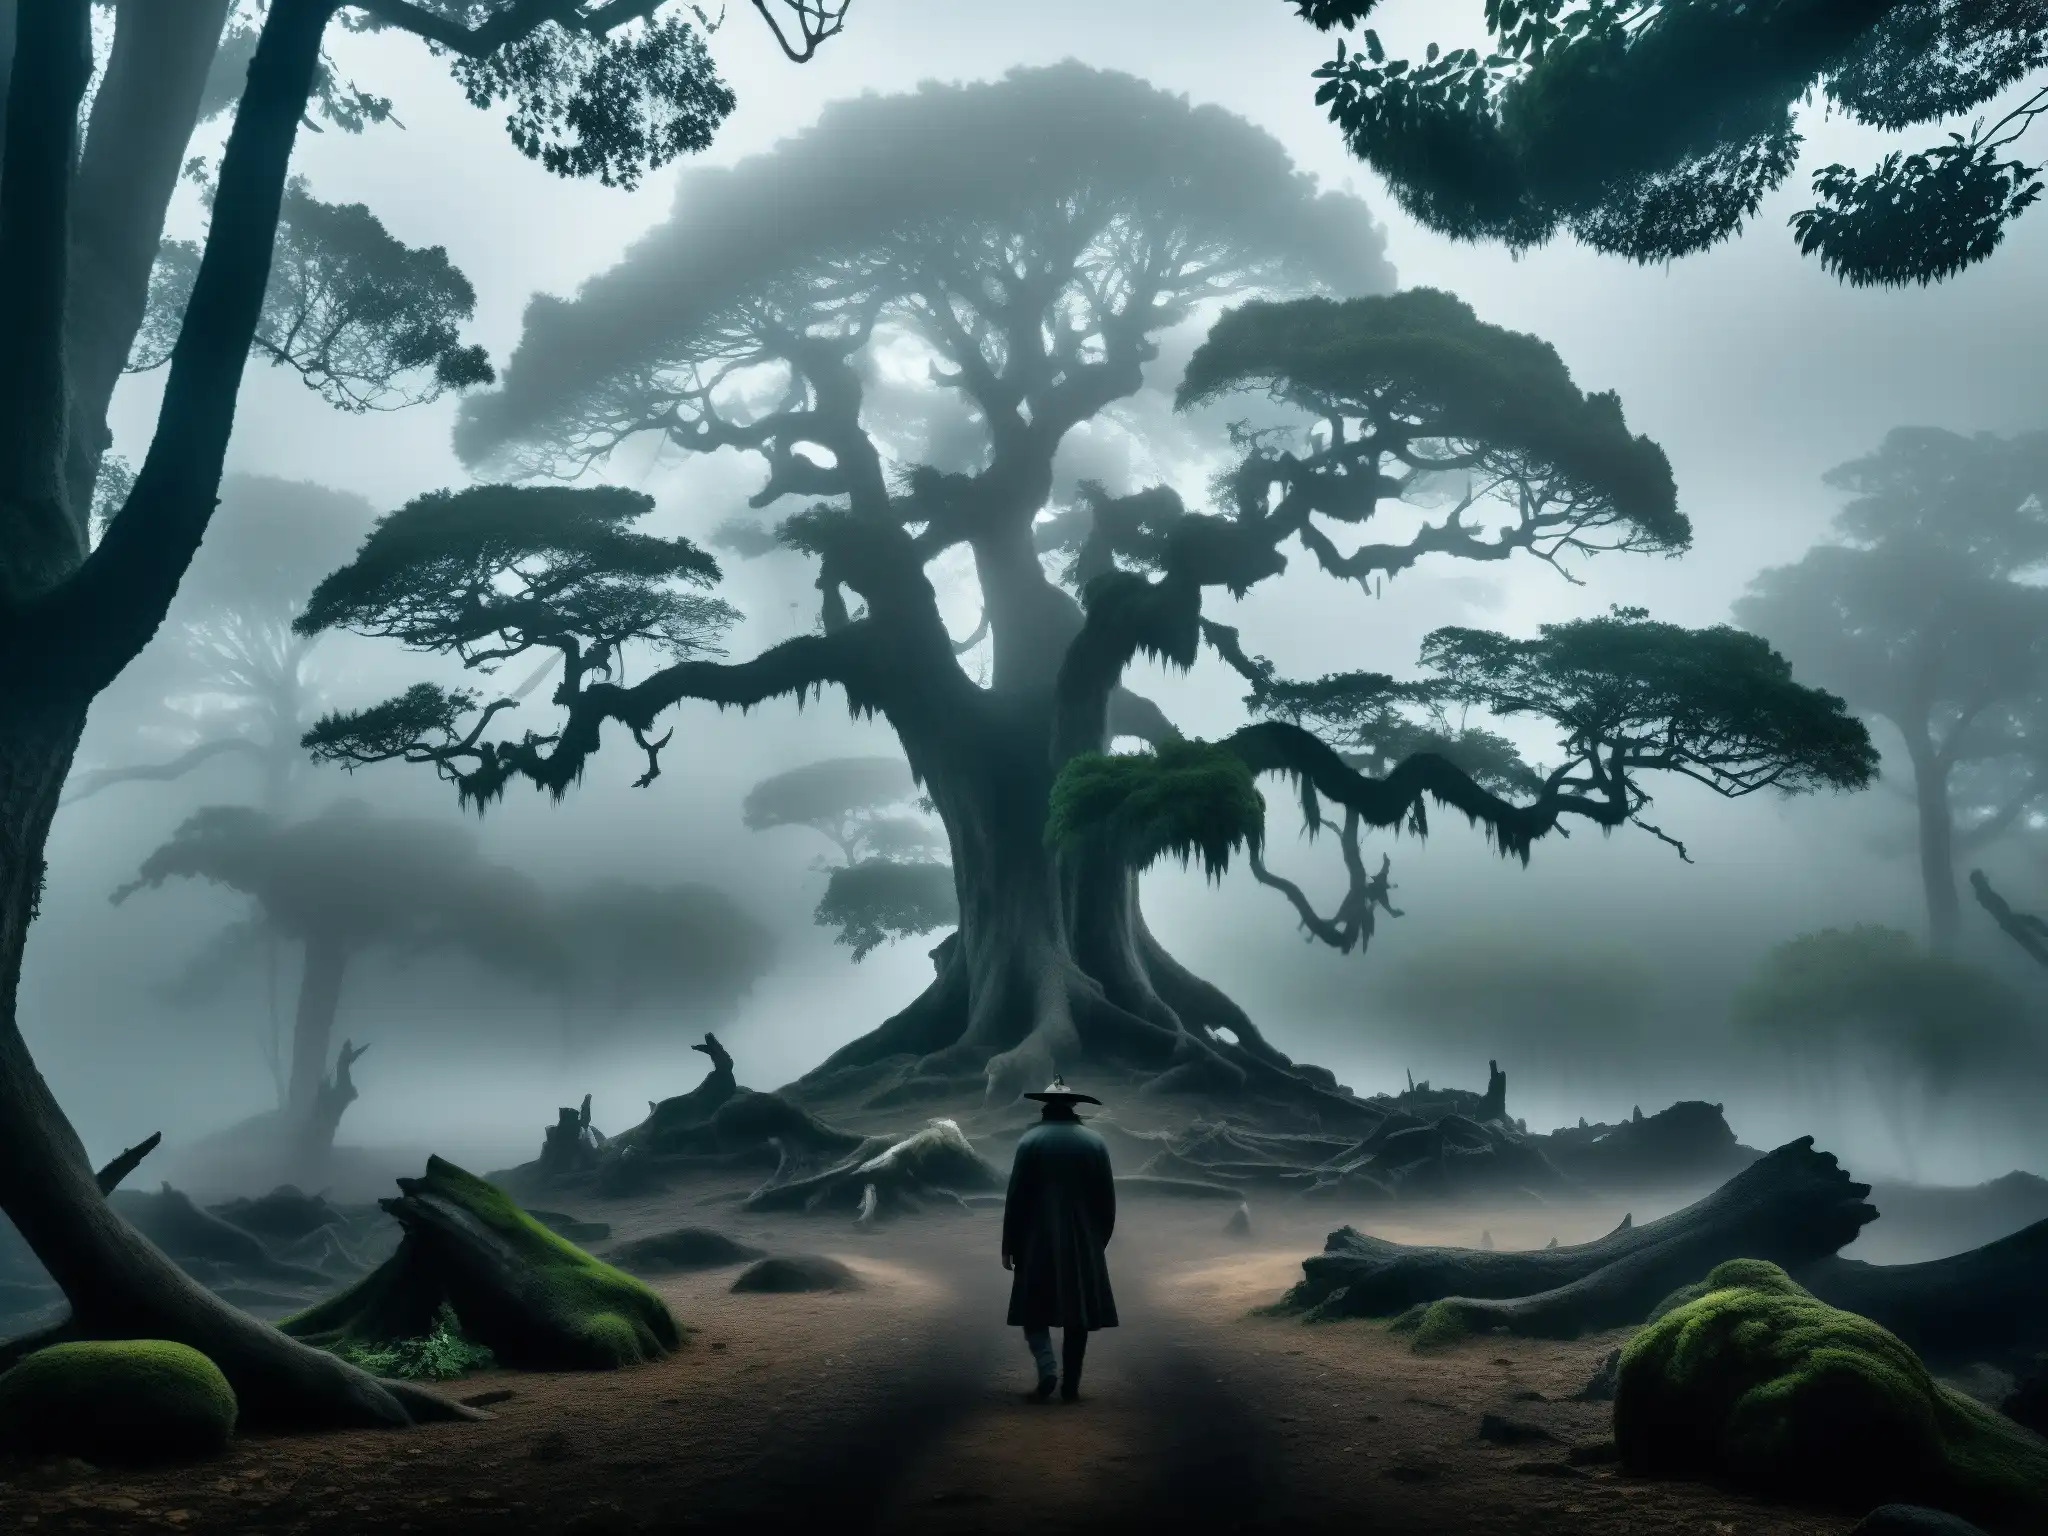 'Un bosque neblinoso y misterioso en México, evocando la leyenda de La Cegua